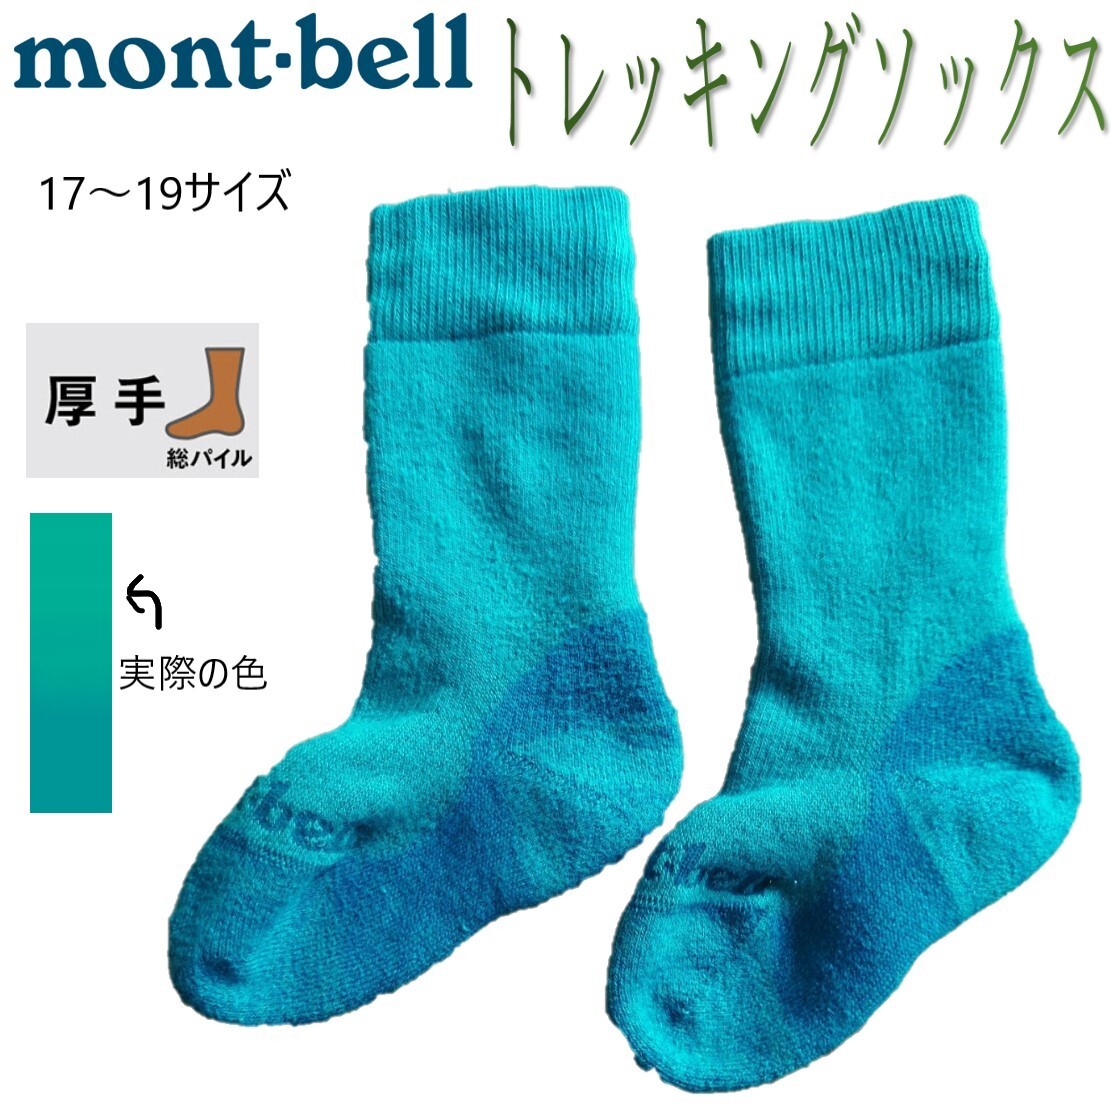 Детские носки для треккинга / 17-19 размер [Mont-Bell / Montbell] стоимость доставки 140 иен